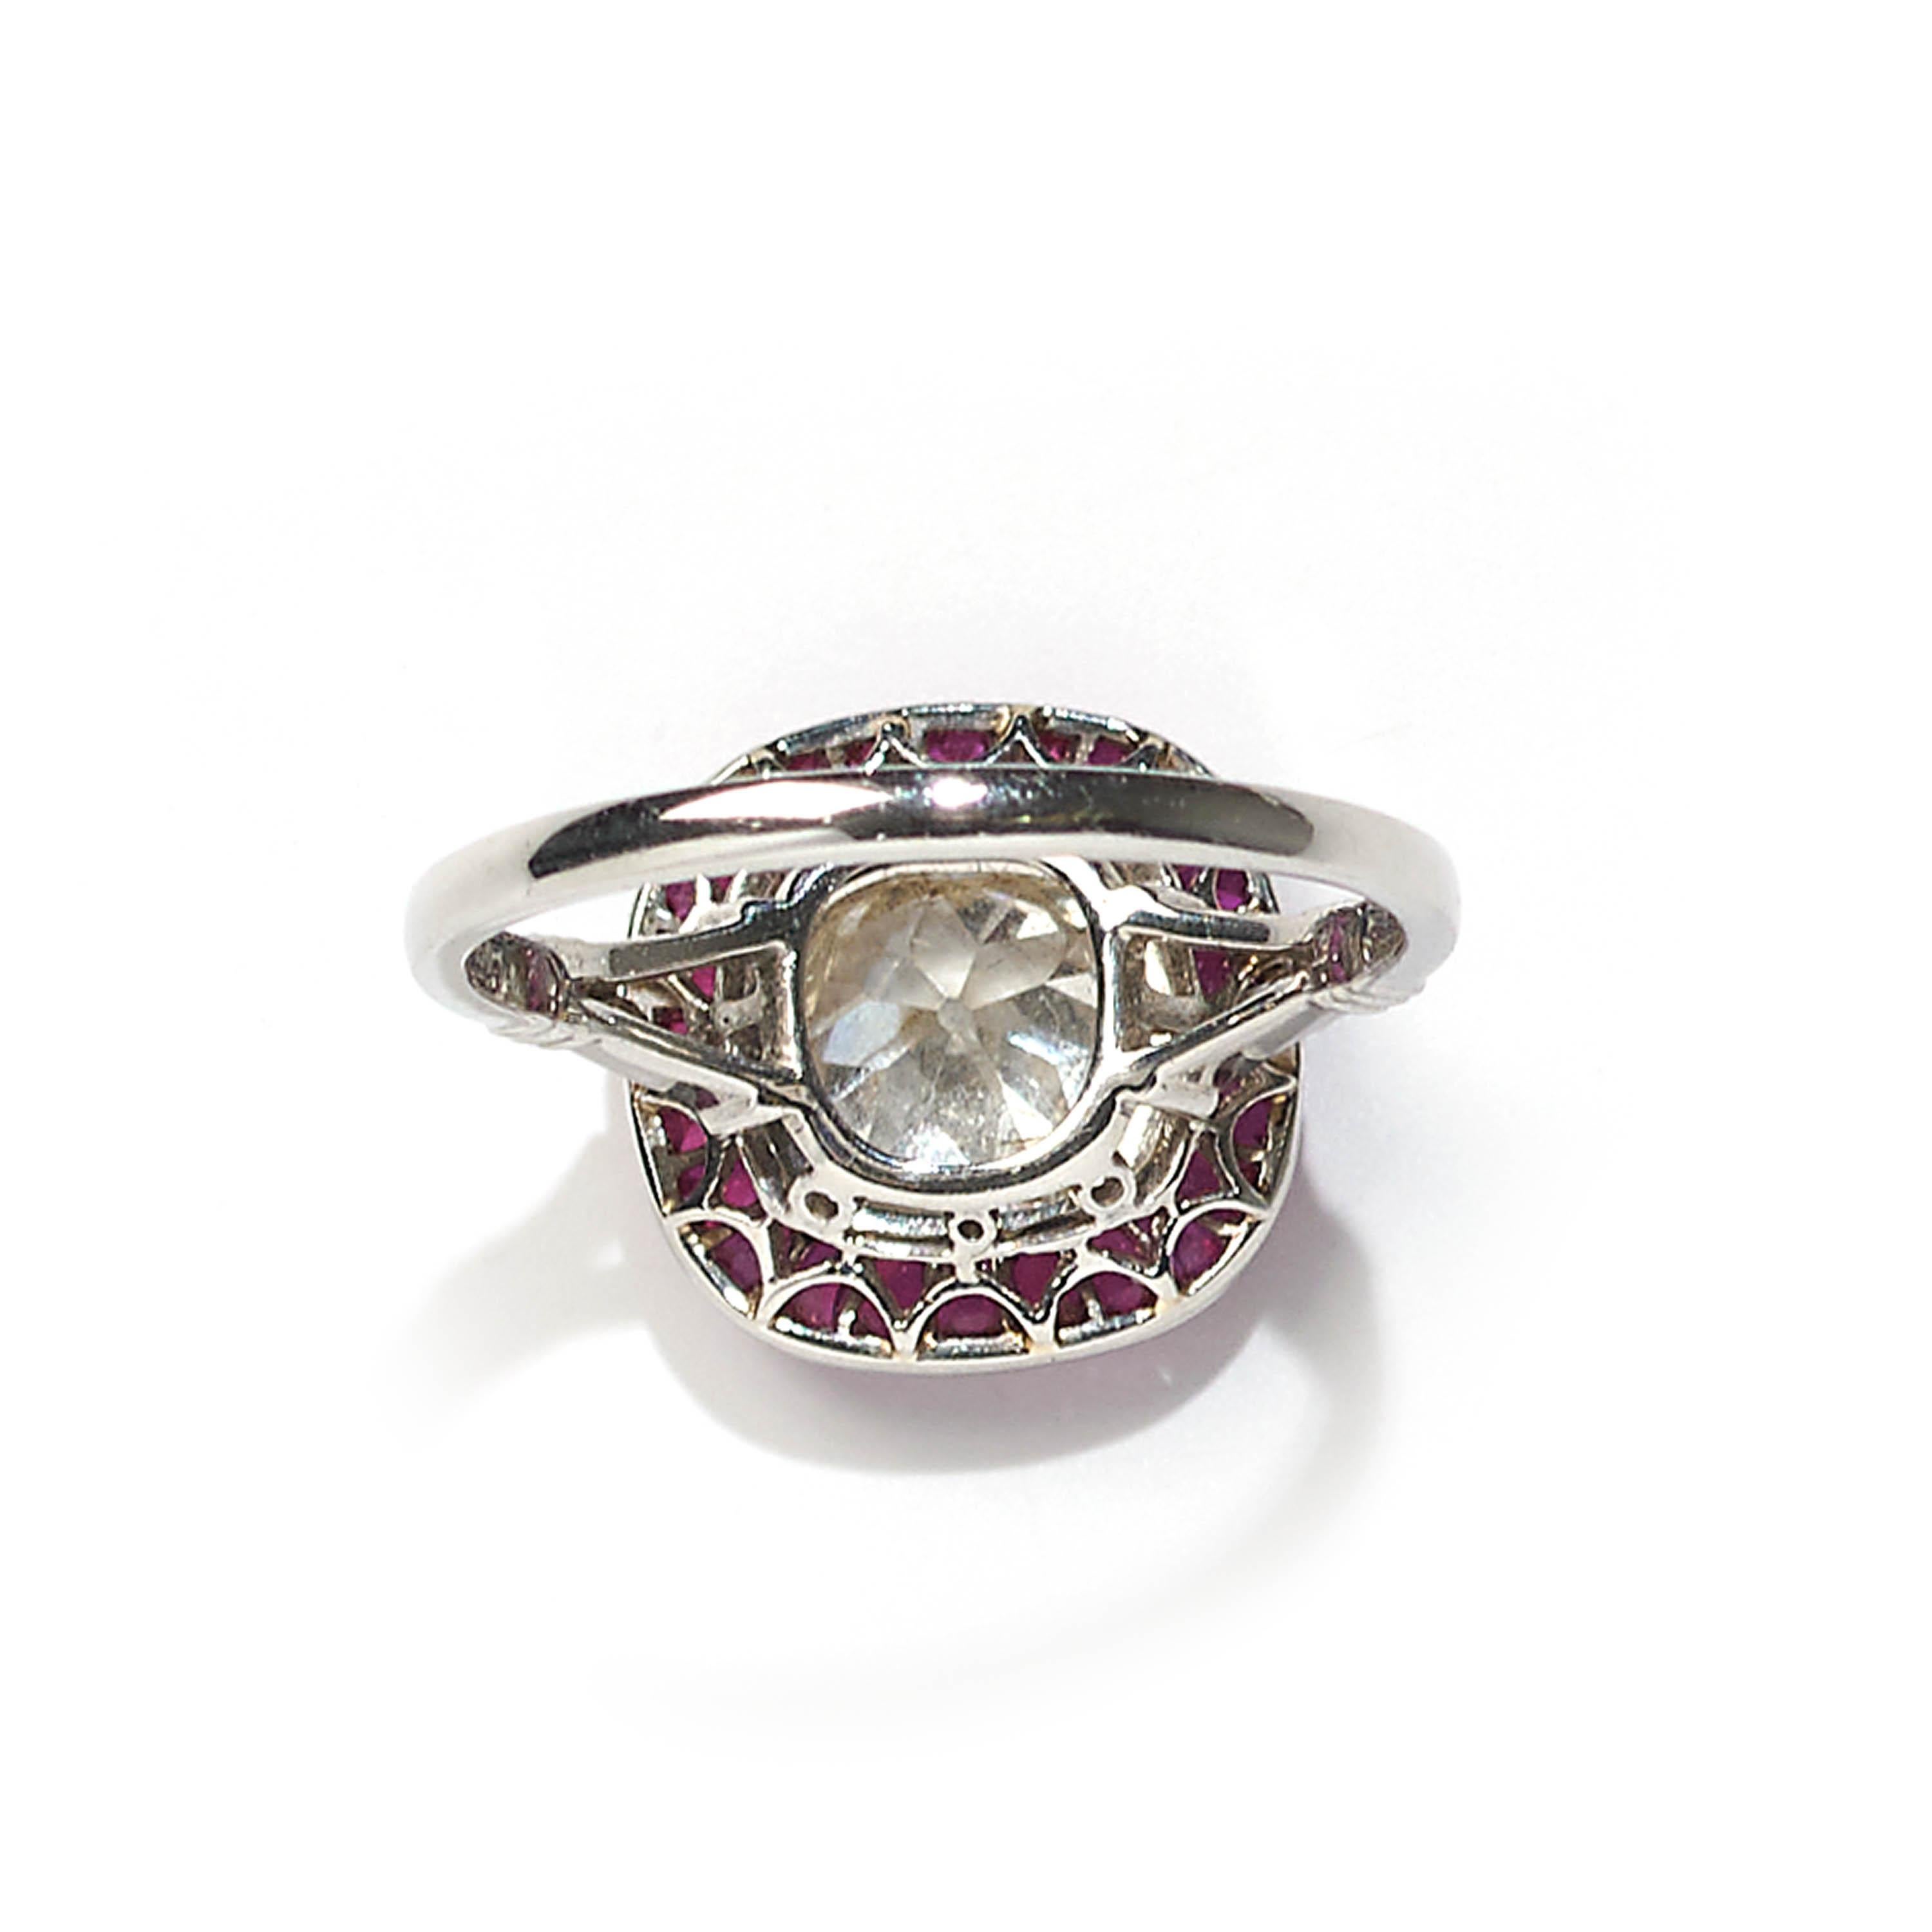 Ein moderner kissenförmiger Ring mit einem zentralen Diamanten im Kissenschliff mit einem Gewicht von 1,32 Karat, umgeben von einer Einfassung aus Rubinen mit einem Gesamtgewicht von 2,30 Karat, alles in Platin gefasst.